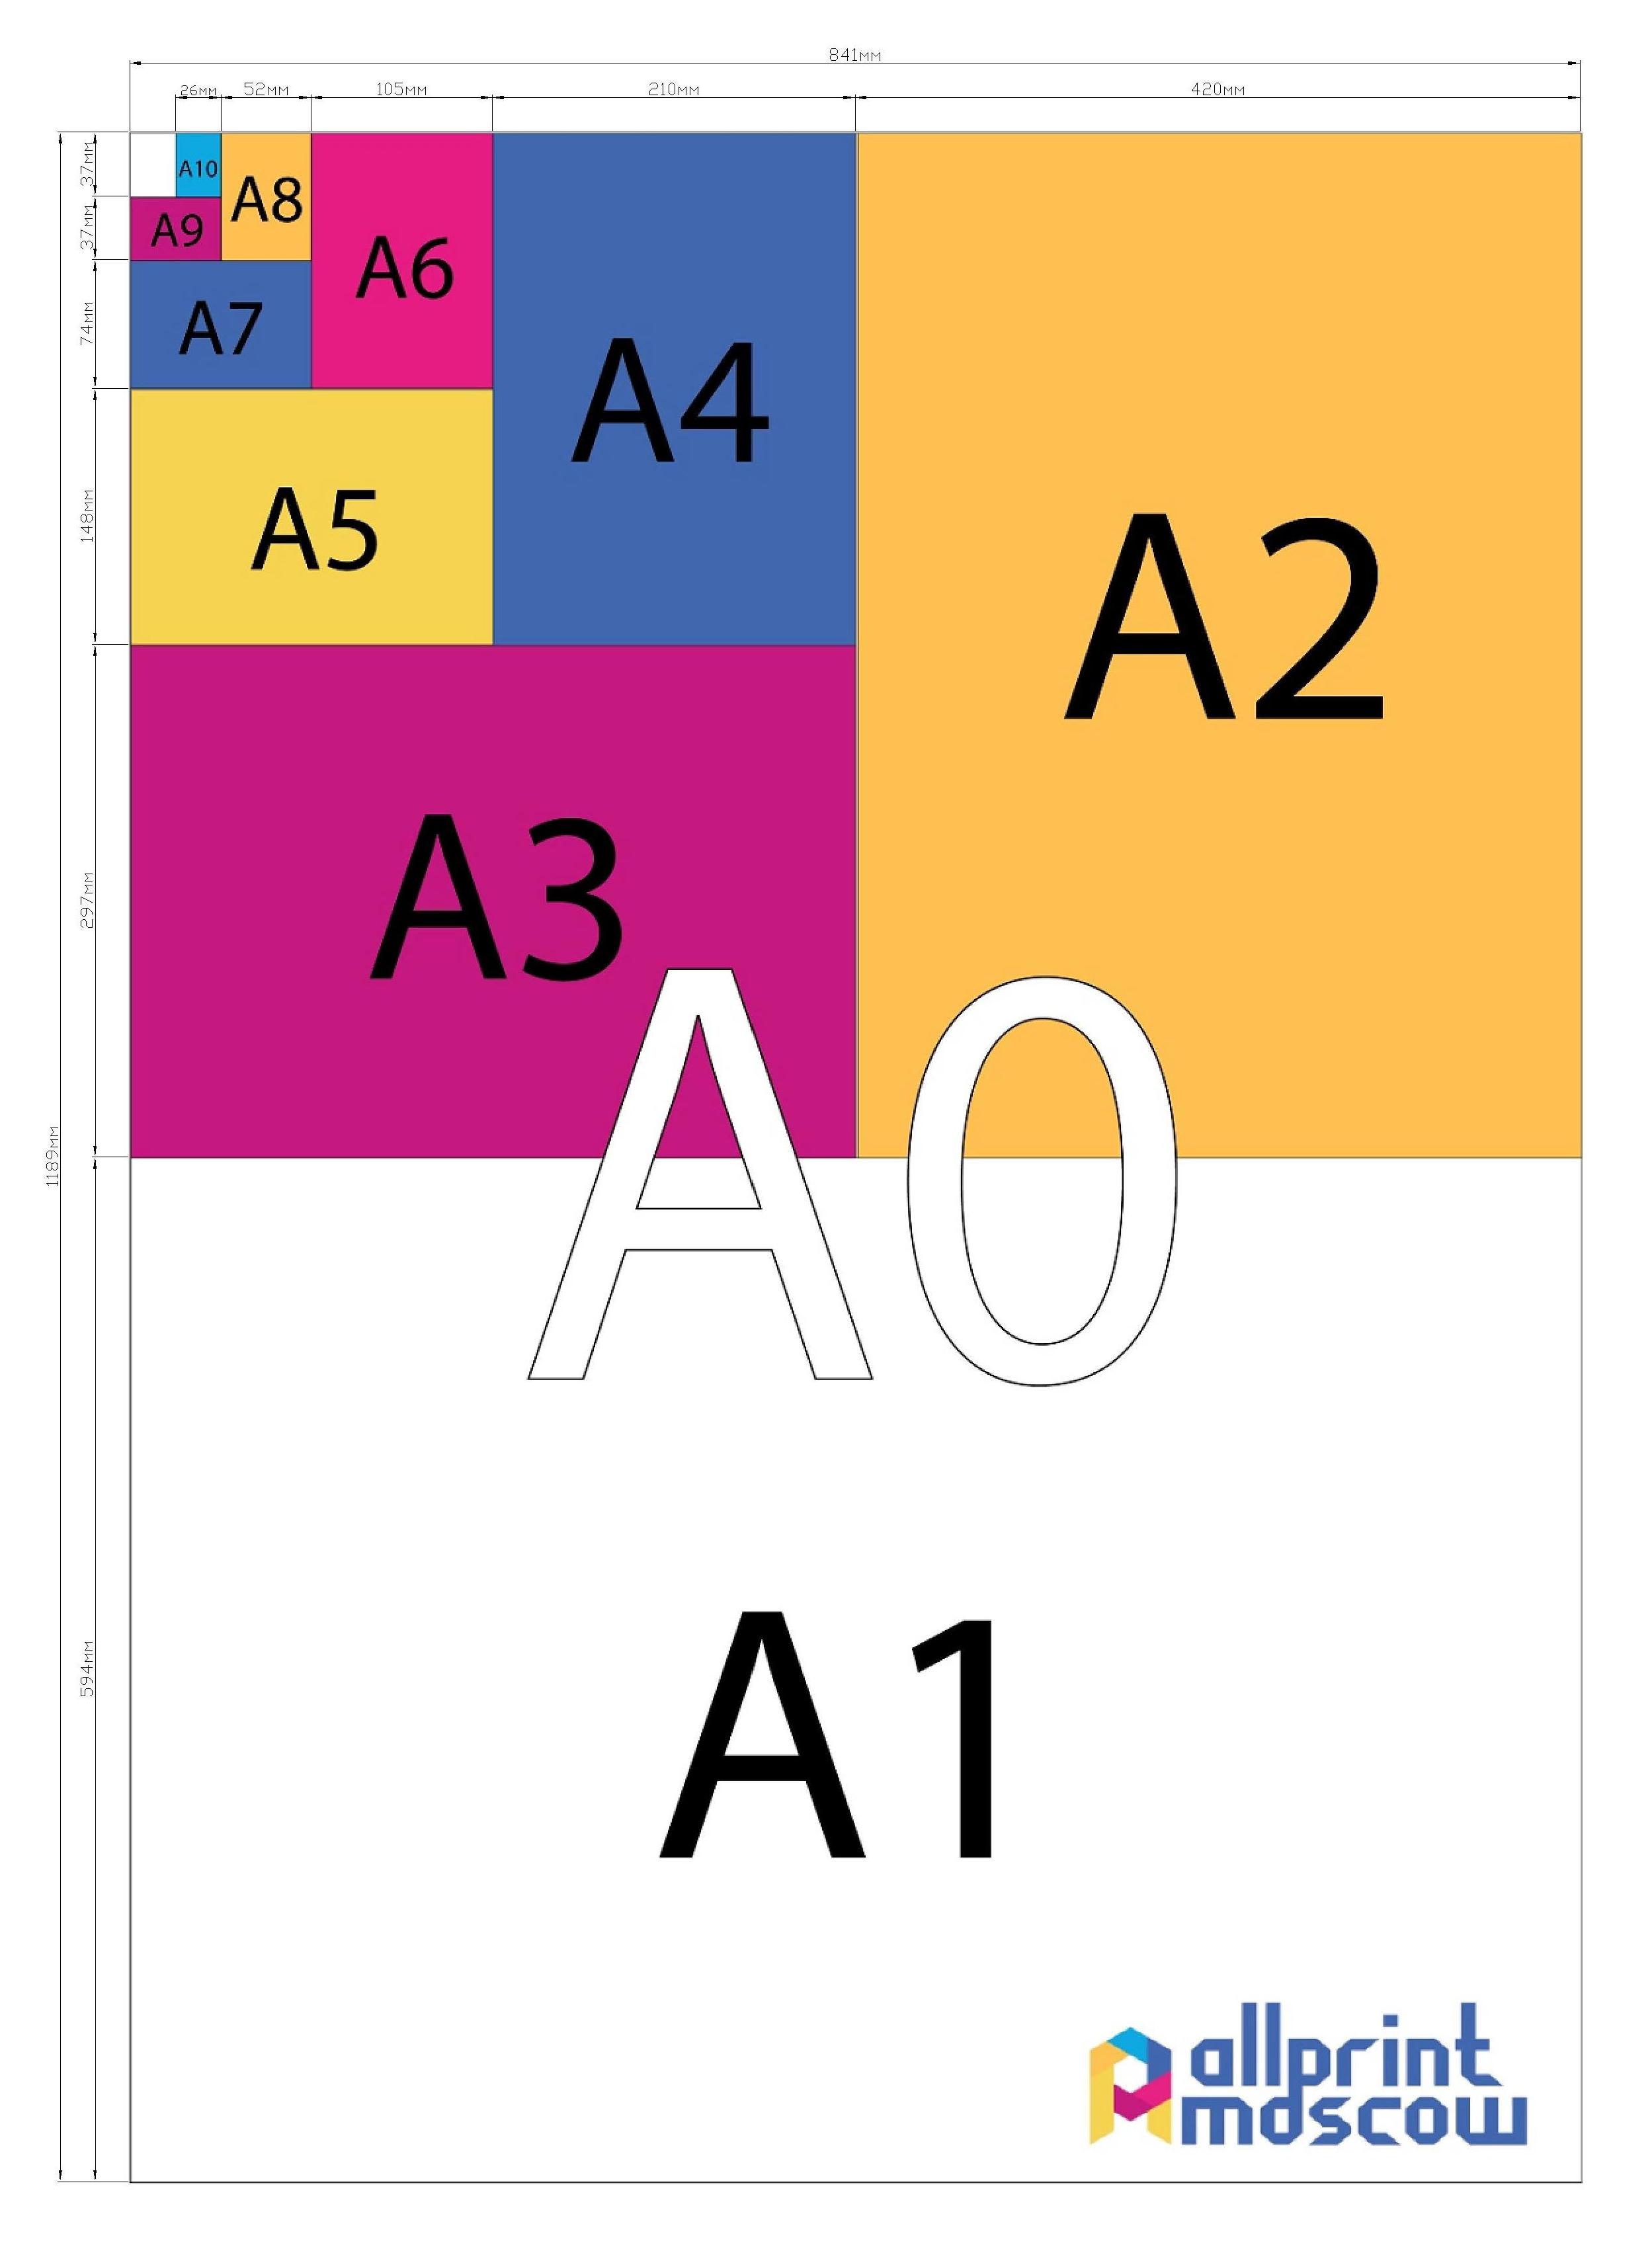 Какой размер в пикселях имеют листы формата А4 и А3 в зависимости от DPI?